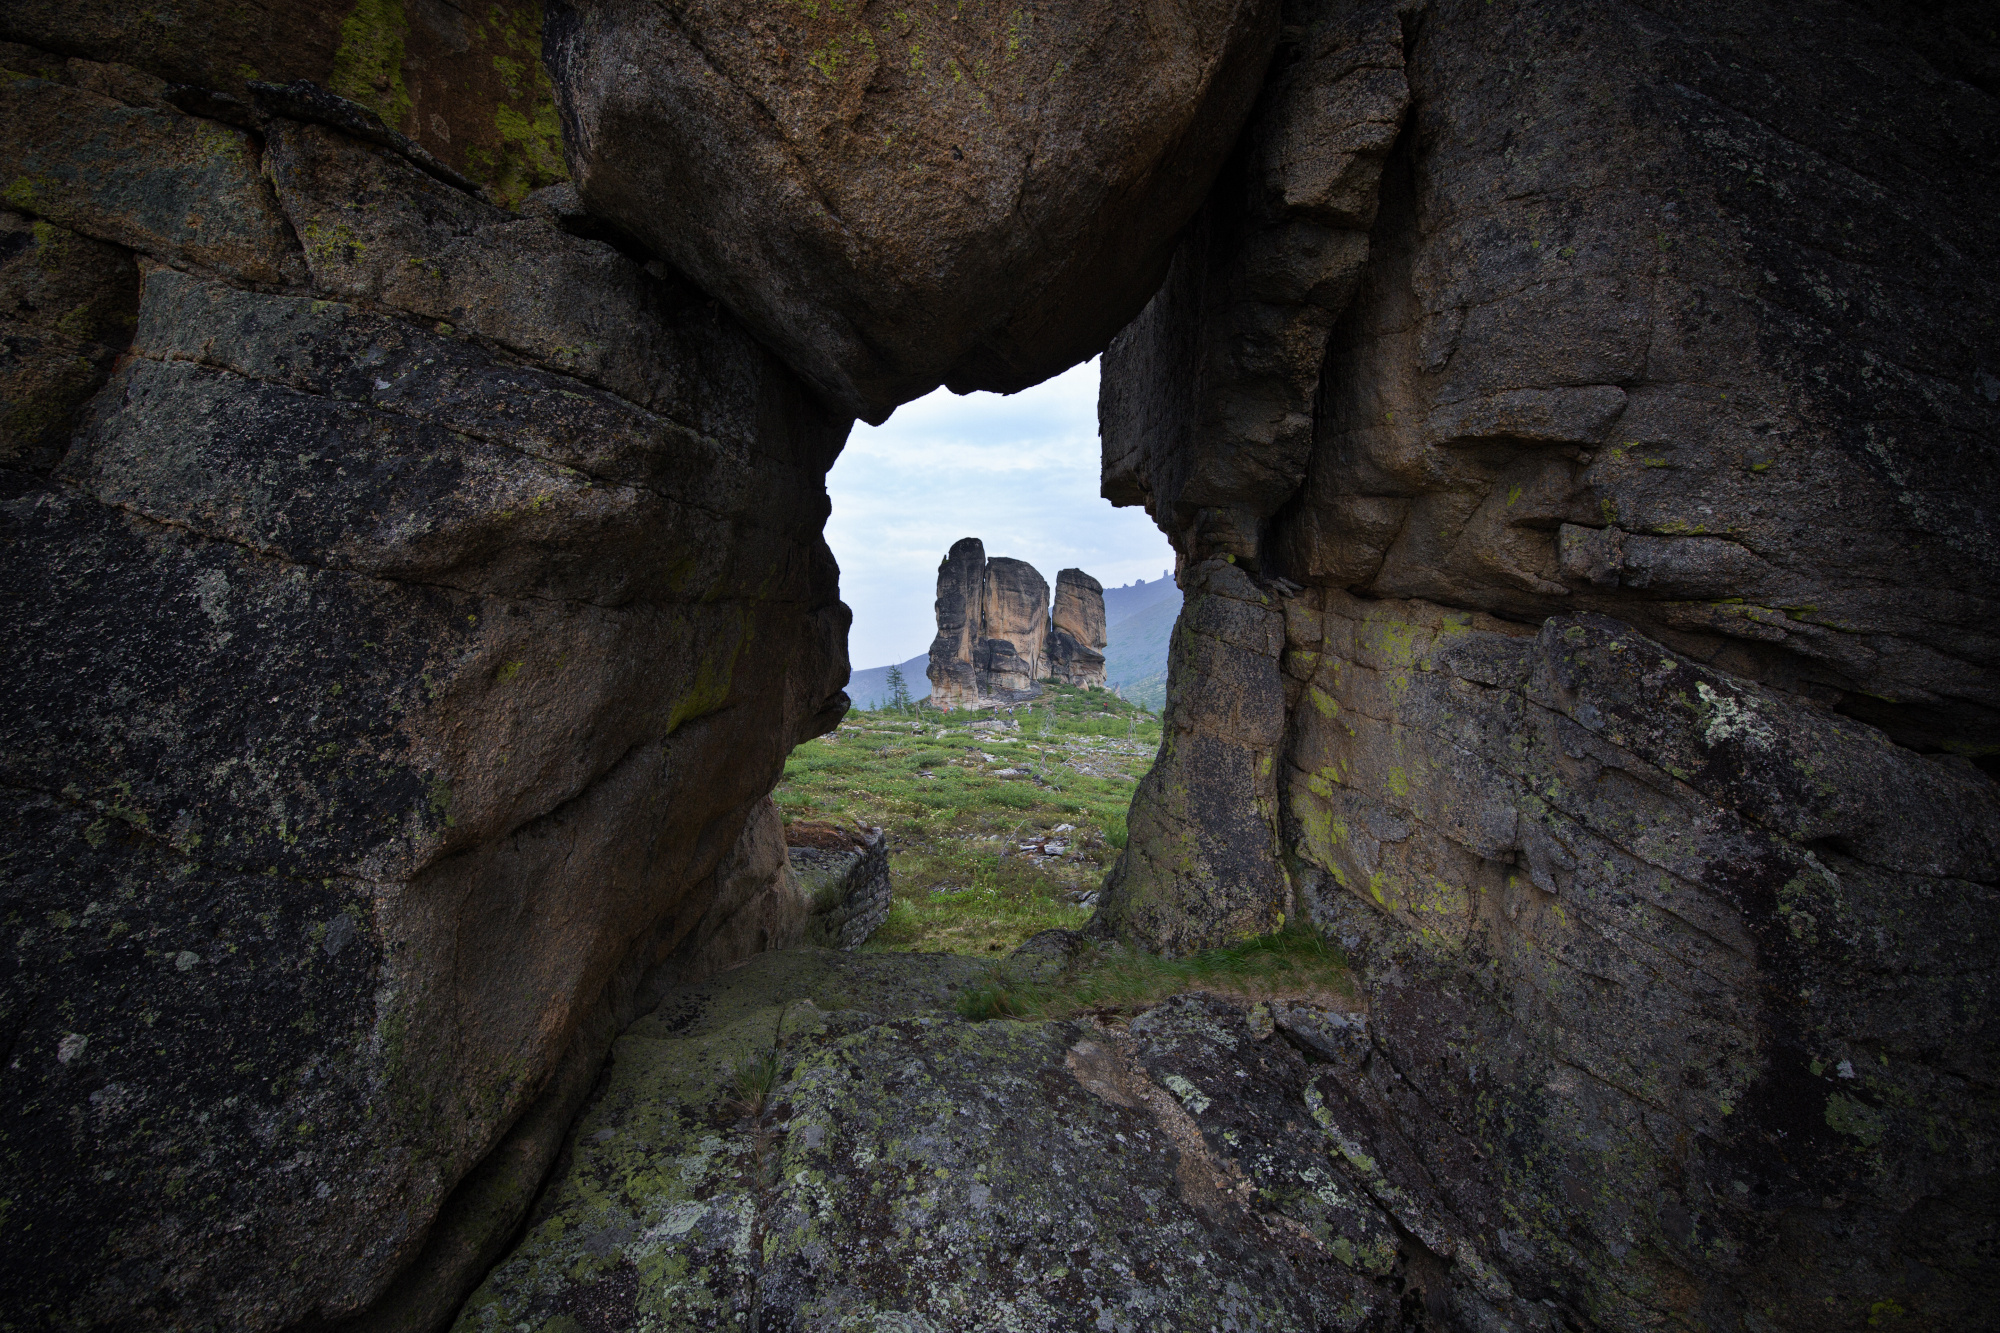 Кисиляхи — таинственные скалы мистической земли. Фото: Павел Глушков, участник фотоконкурса РГО 